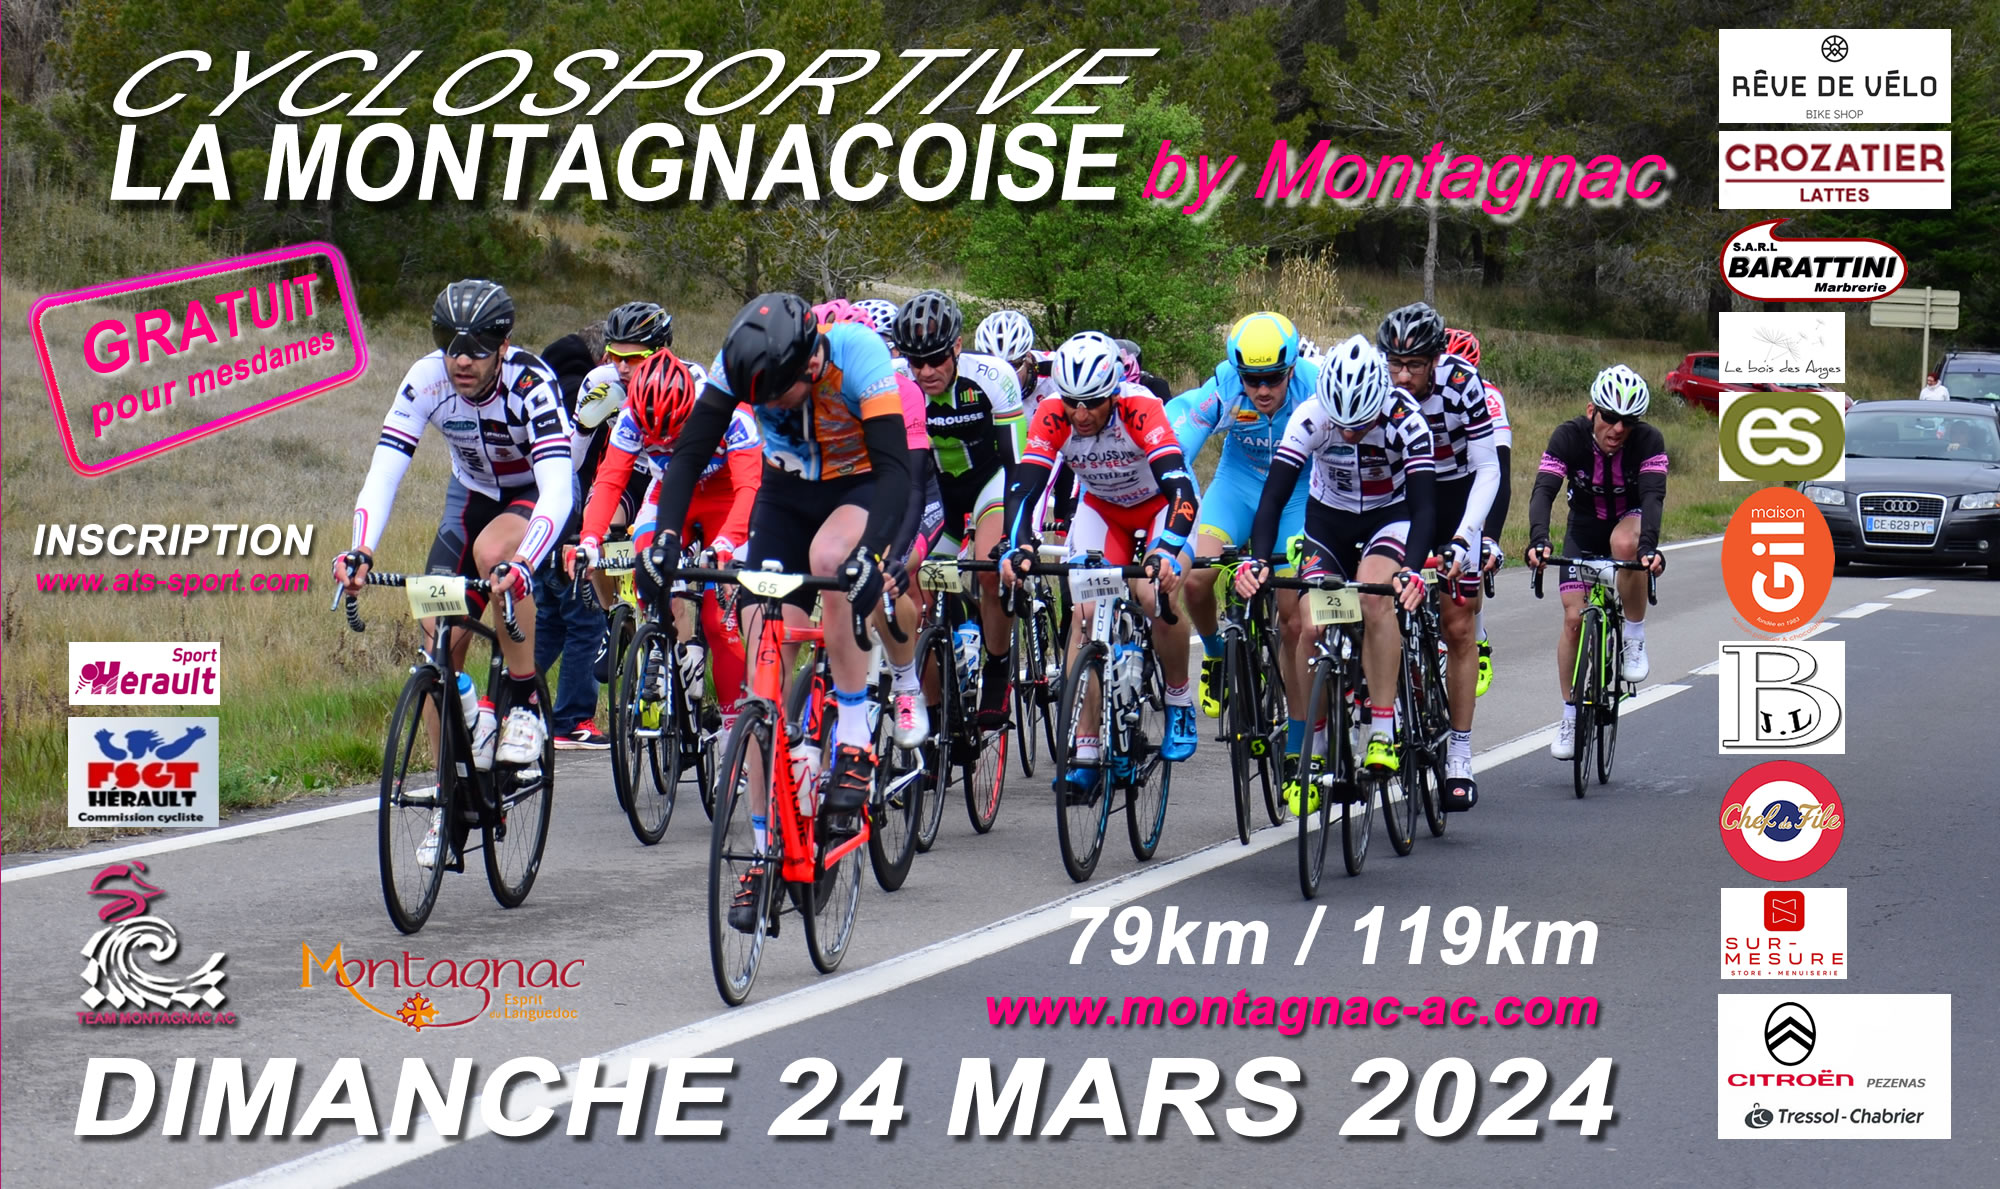 LA MONTAGNACOISE by Montagnac